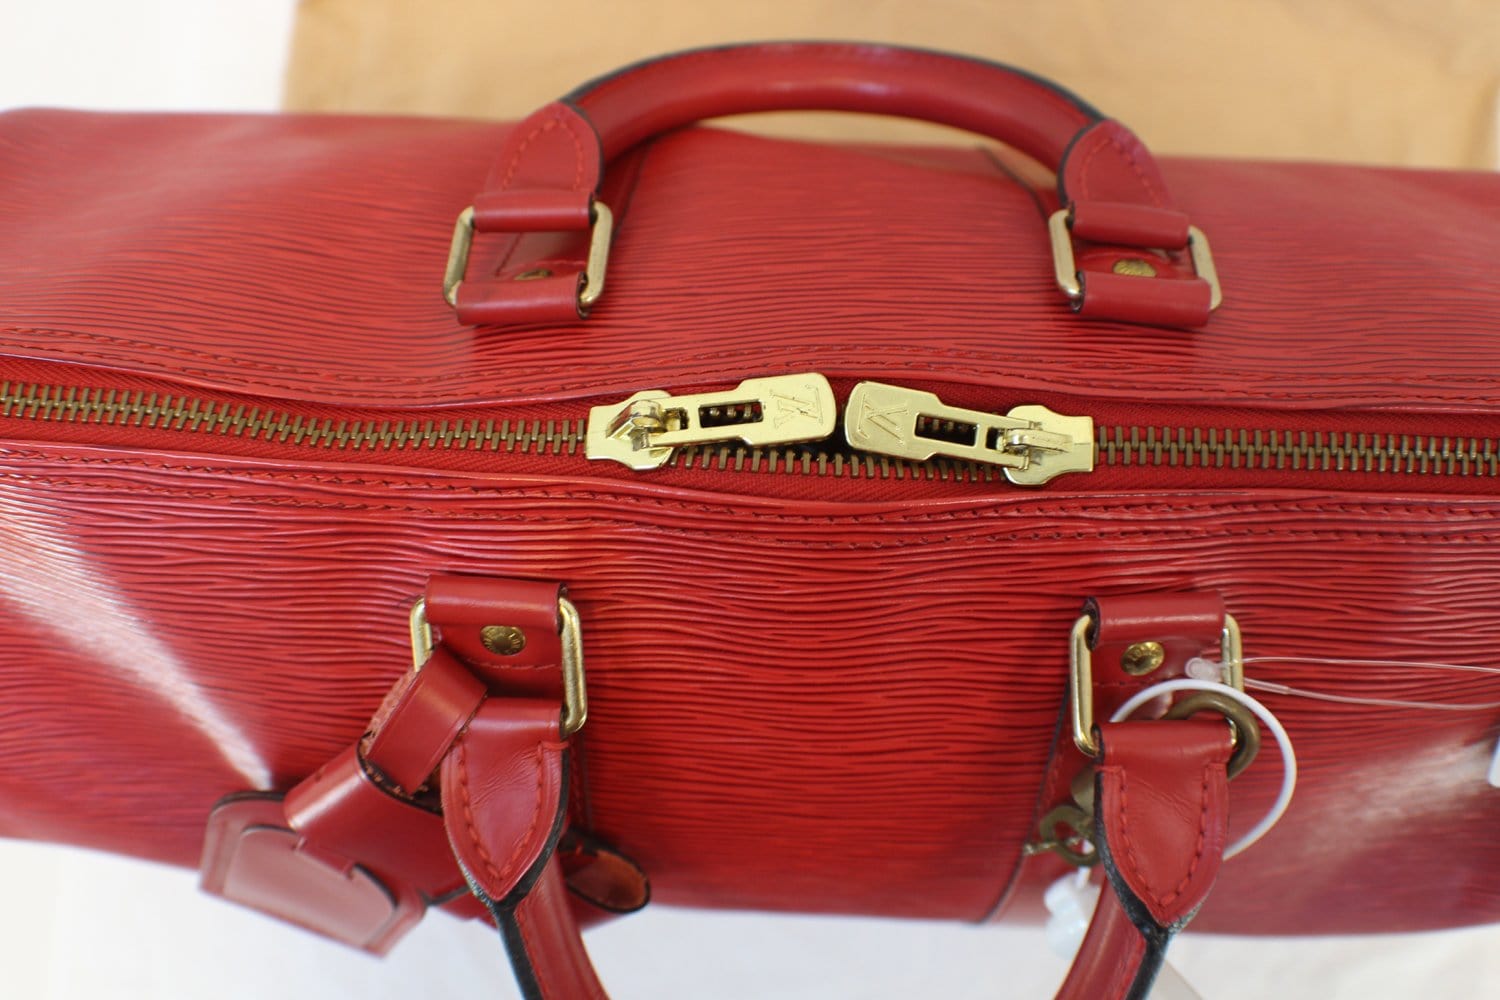 LOUIS VUITTON Epi Leather Red Keepall 45 Boston Bag